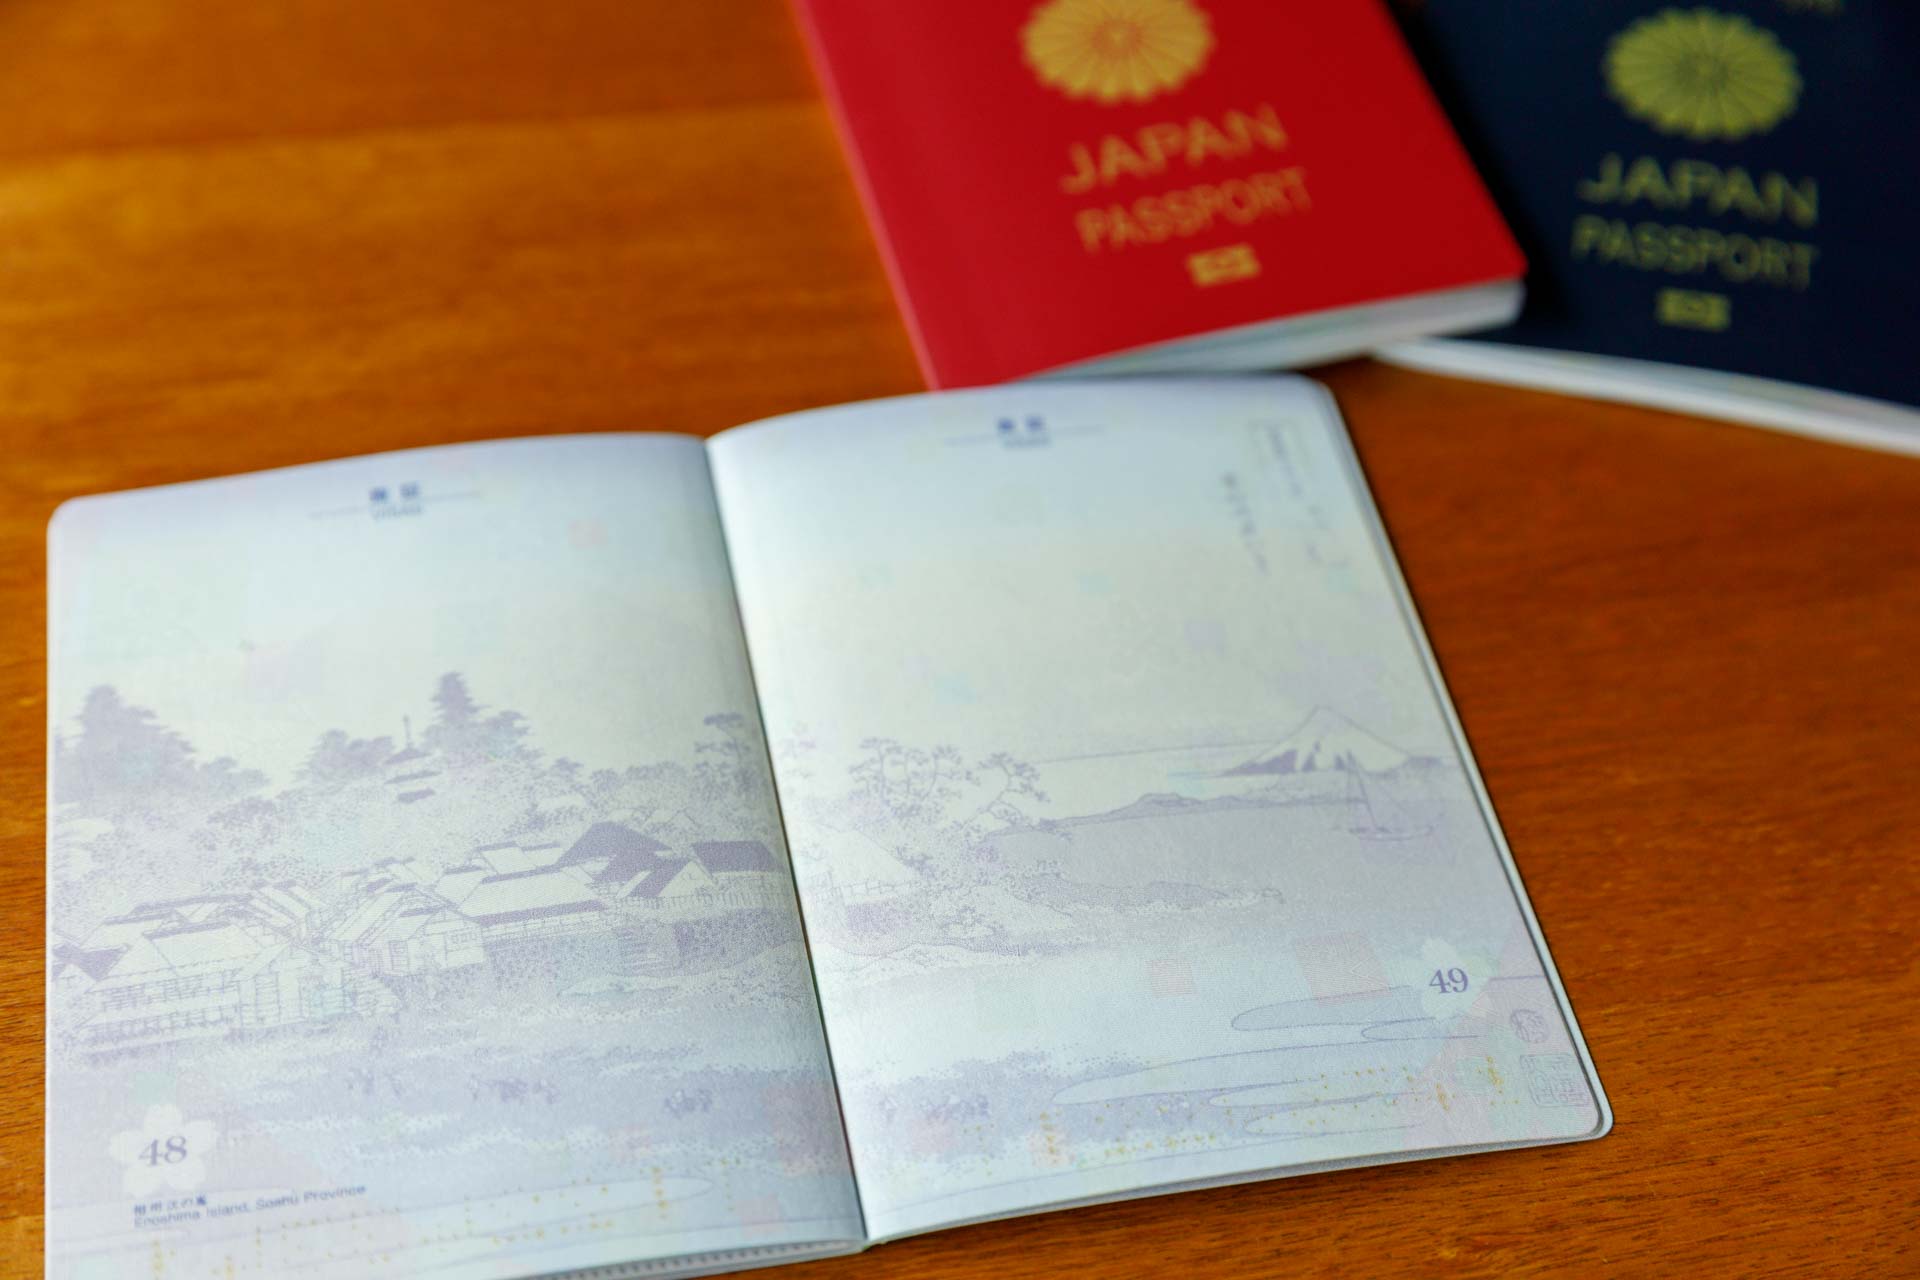 BE-PAL webの記事にした葛飾北斎の「富嶽三十六景」のひとつ「相州江の島」がパスポートに